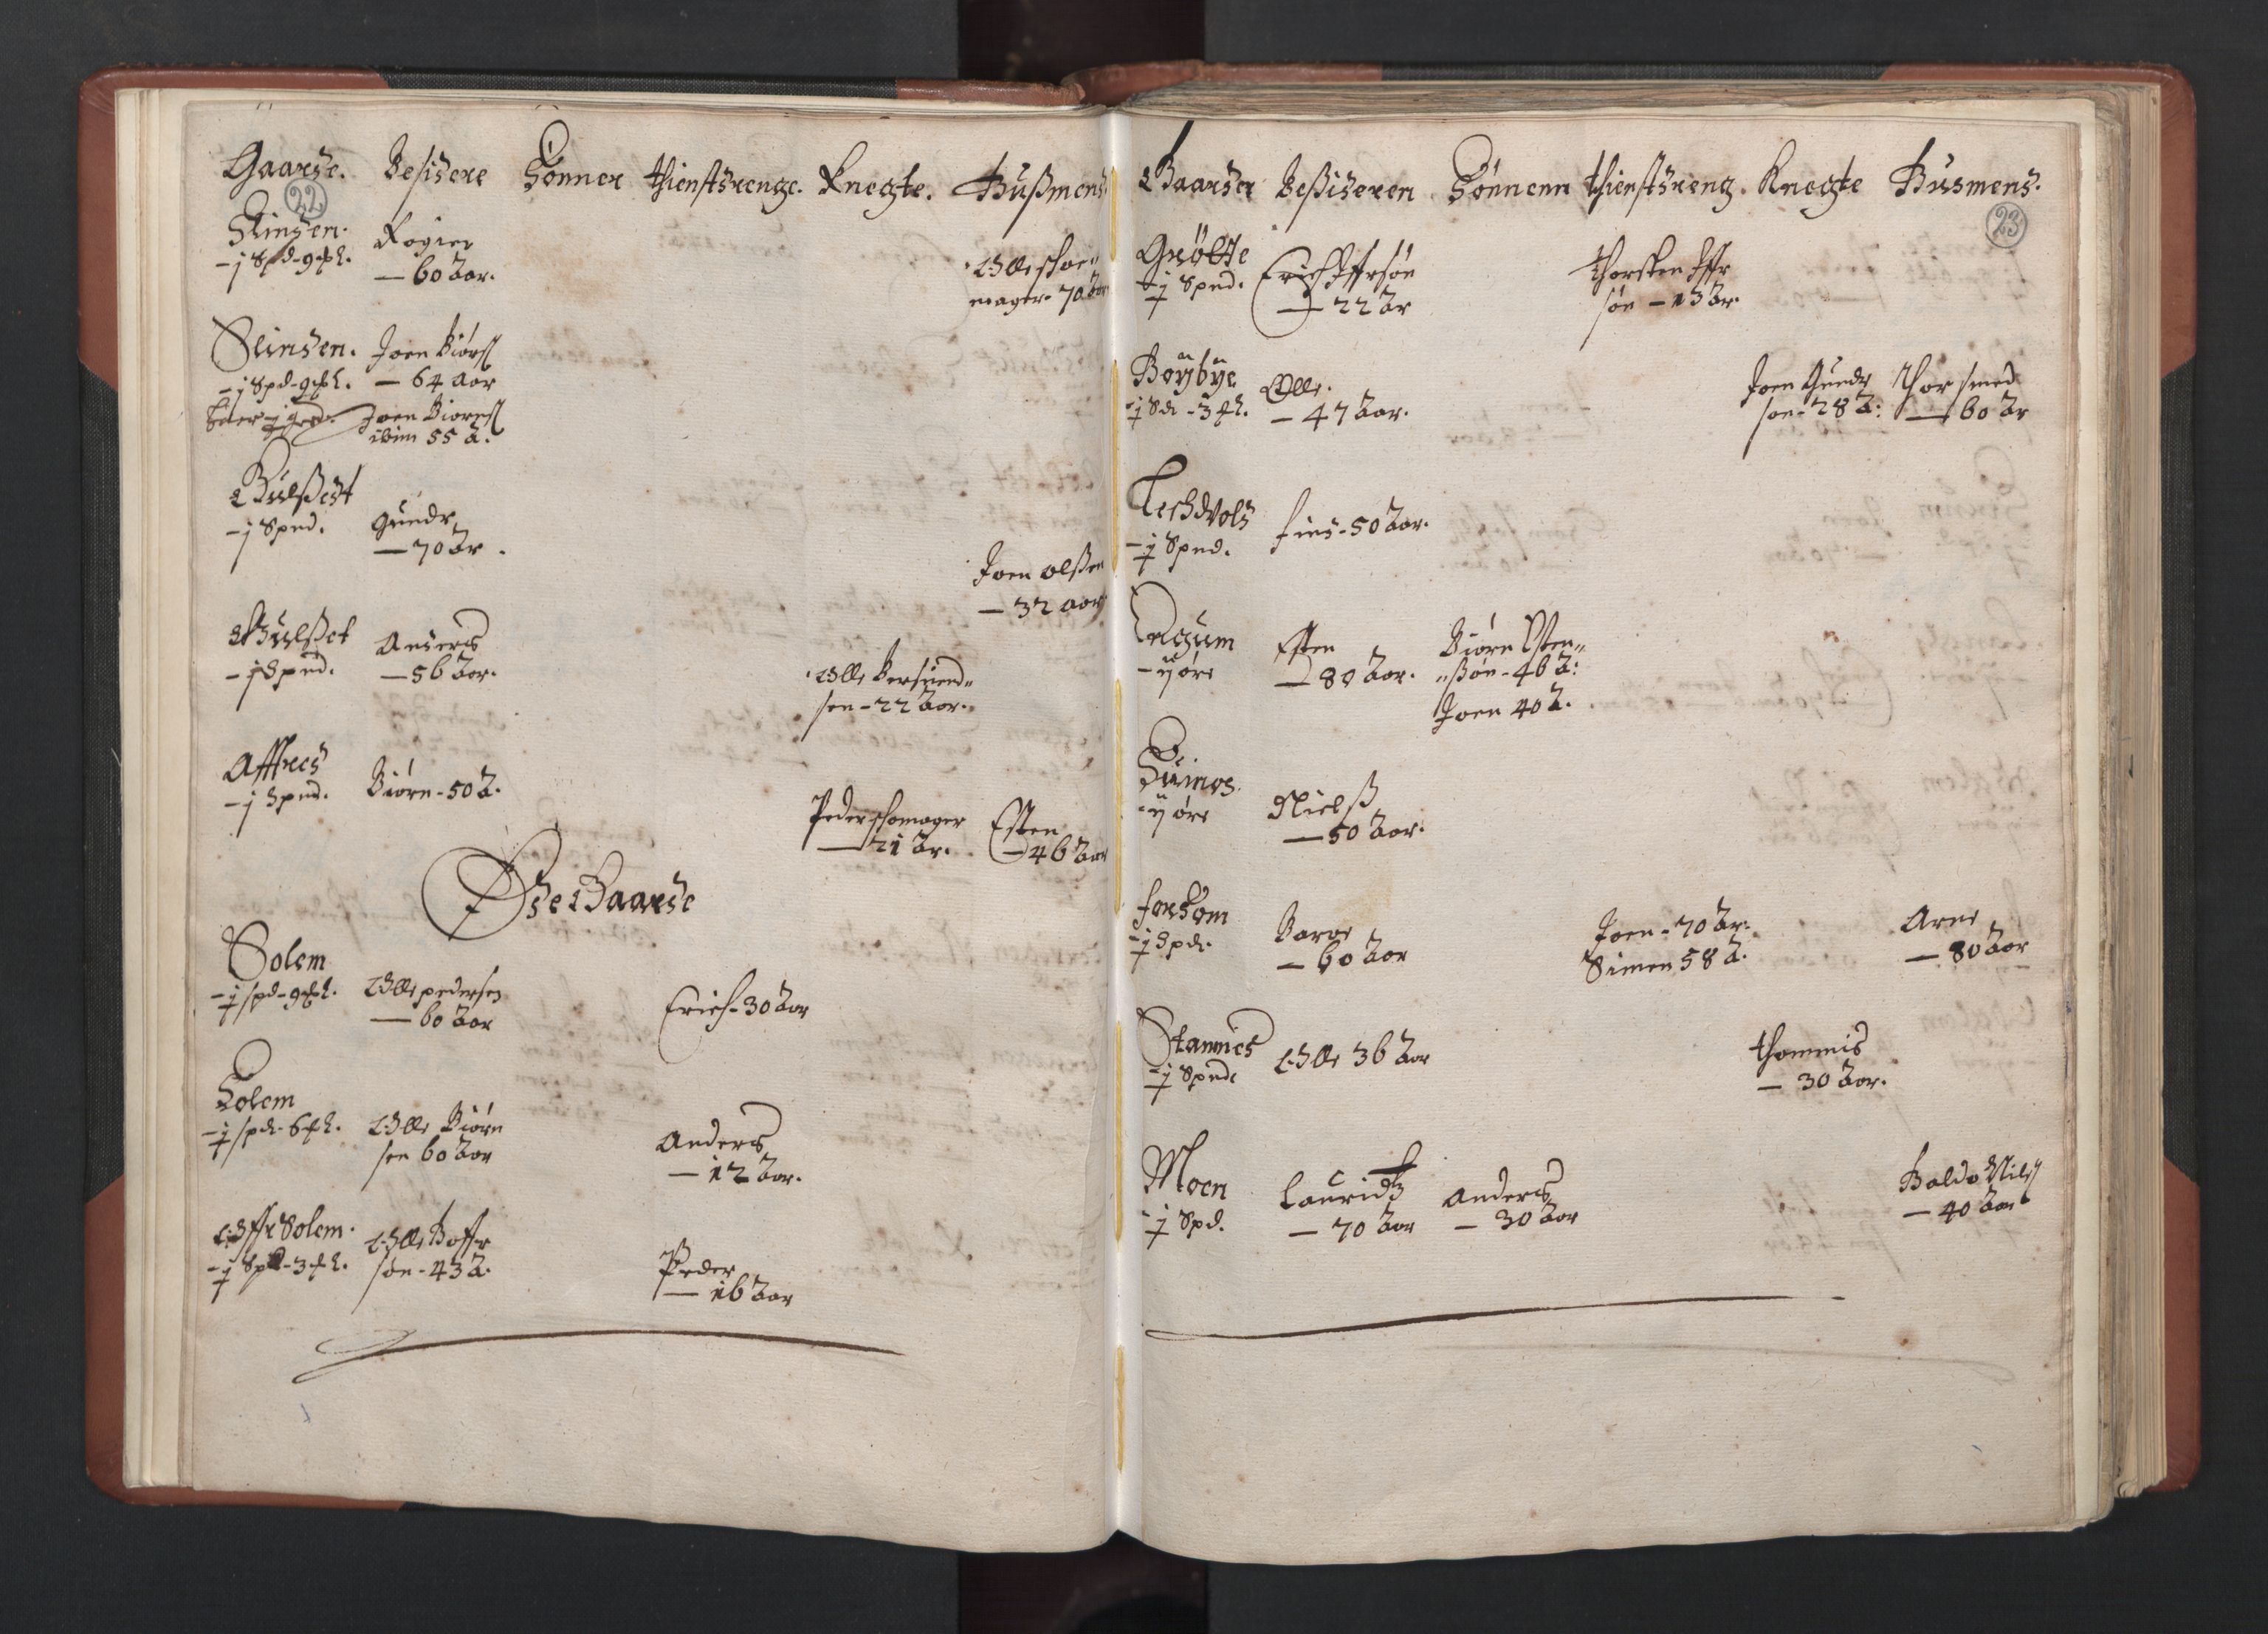 RA, Fogdenes og sorenskrivernes manntall 1664-1666, nr. 19: Fosen fogderi, Inderøy fogderi, Selbu fogderi, Namdal fogderi og Stjørdal fogderi, 1664-1665, s. 22-23